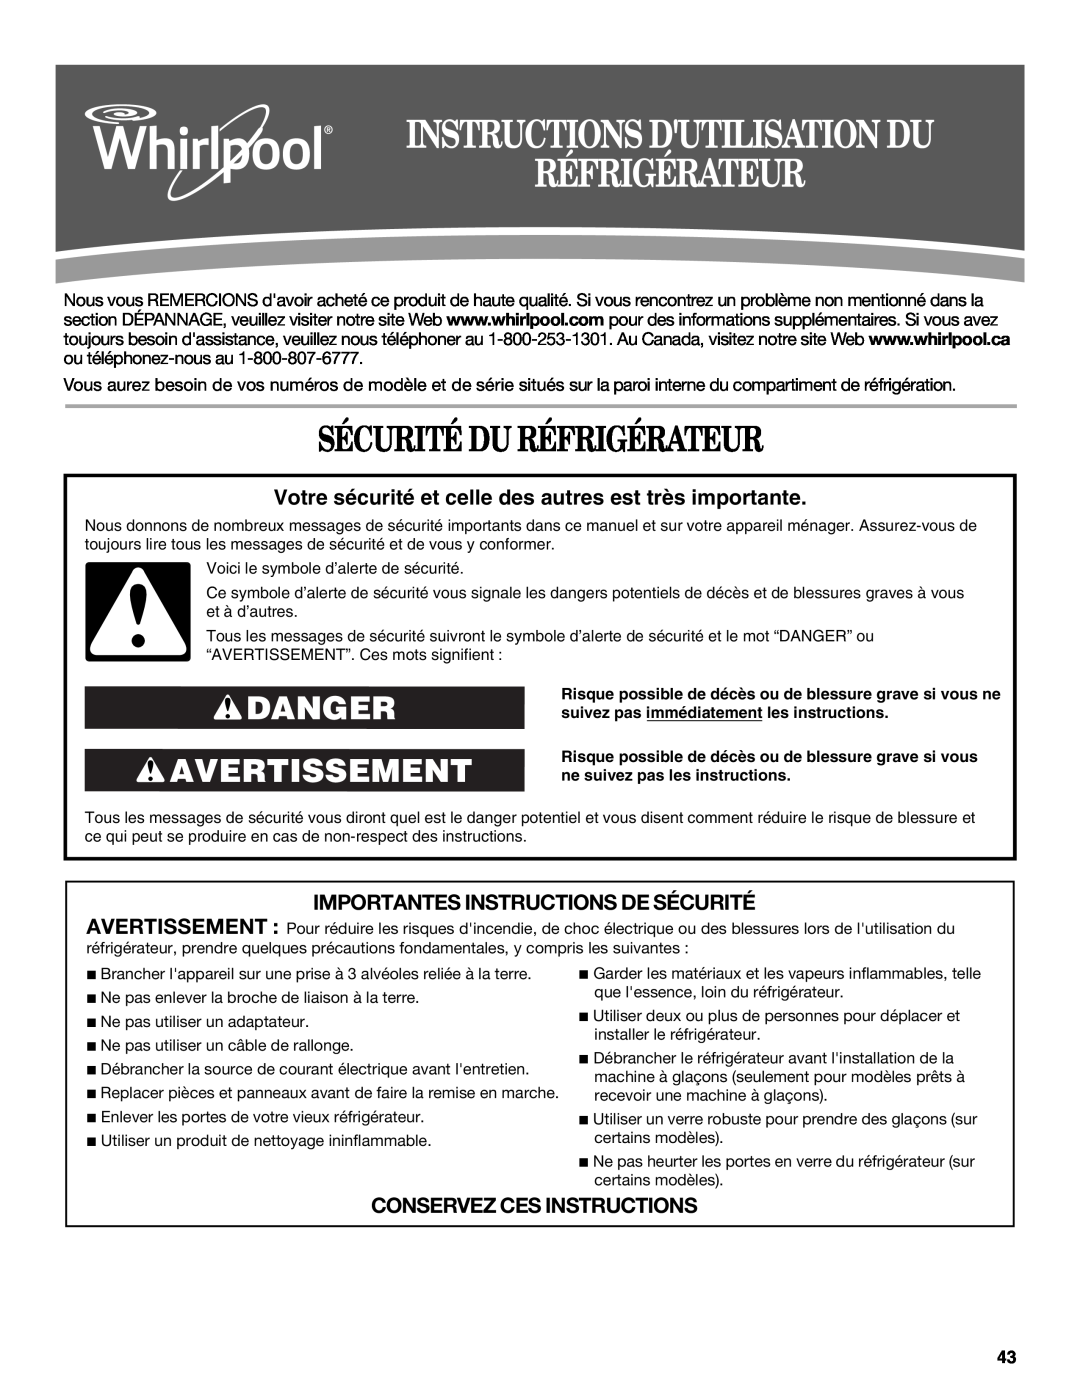 Whirlpool GSF26C4EXT manual Instructions Dutilisation Du Réfrigérateur, Sécurité Du Réfrigérateur, Danger Avertissement 